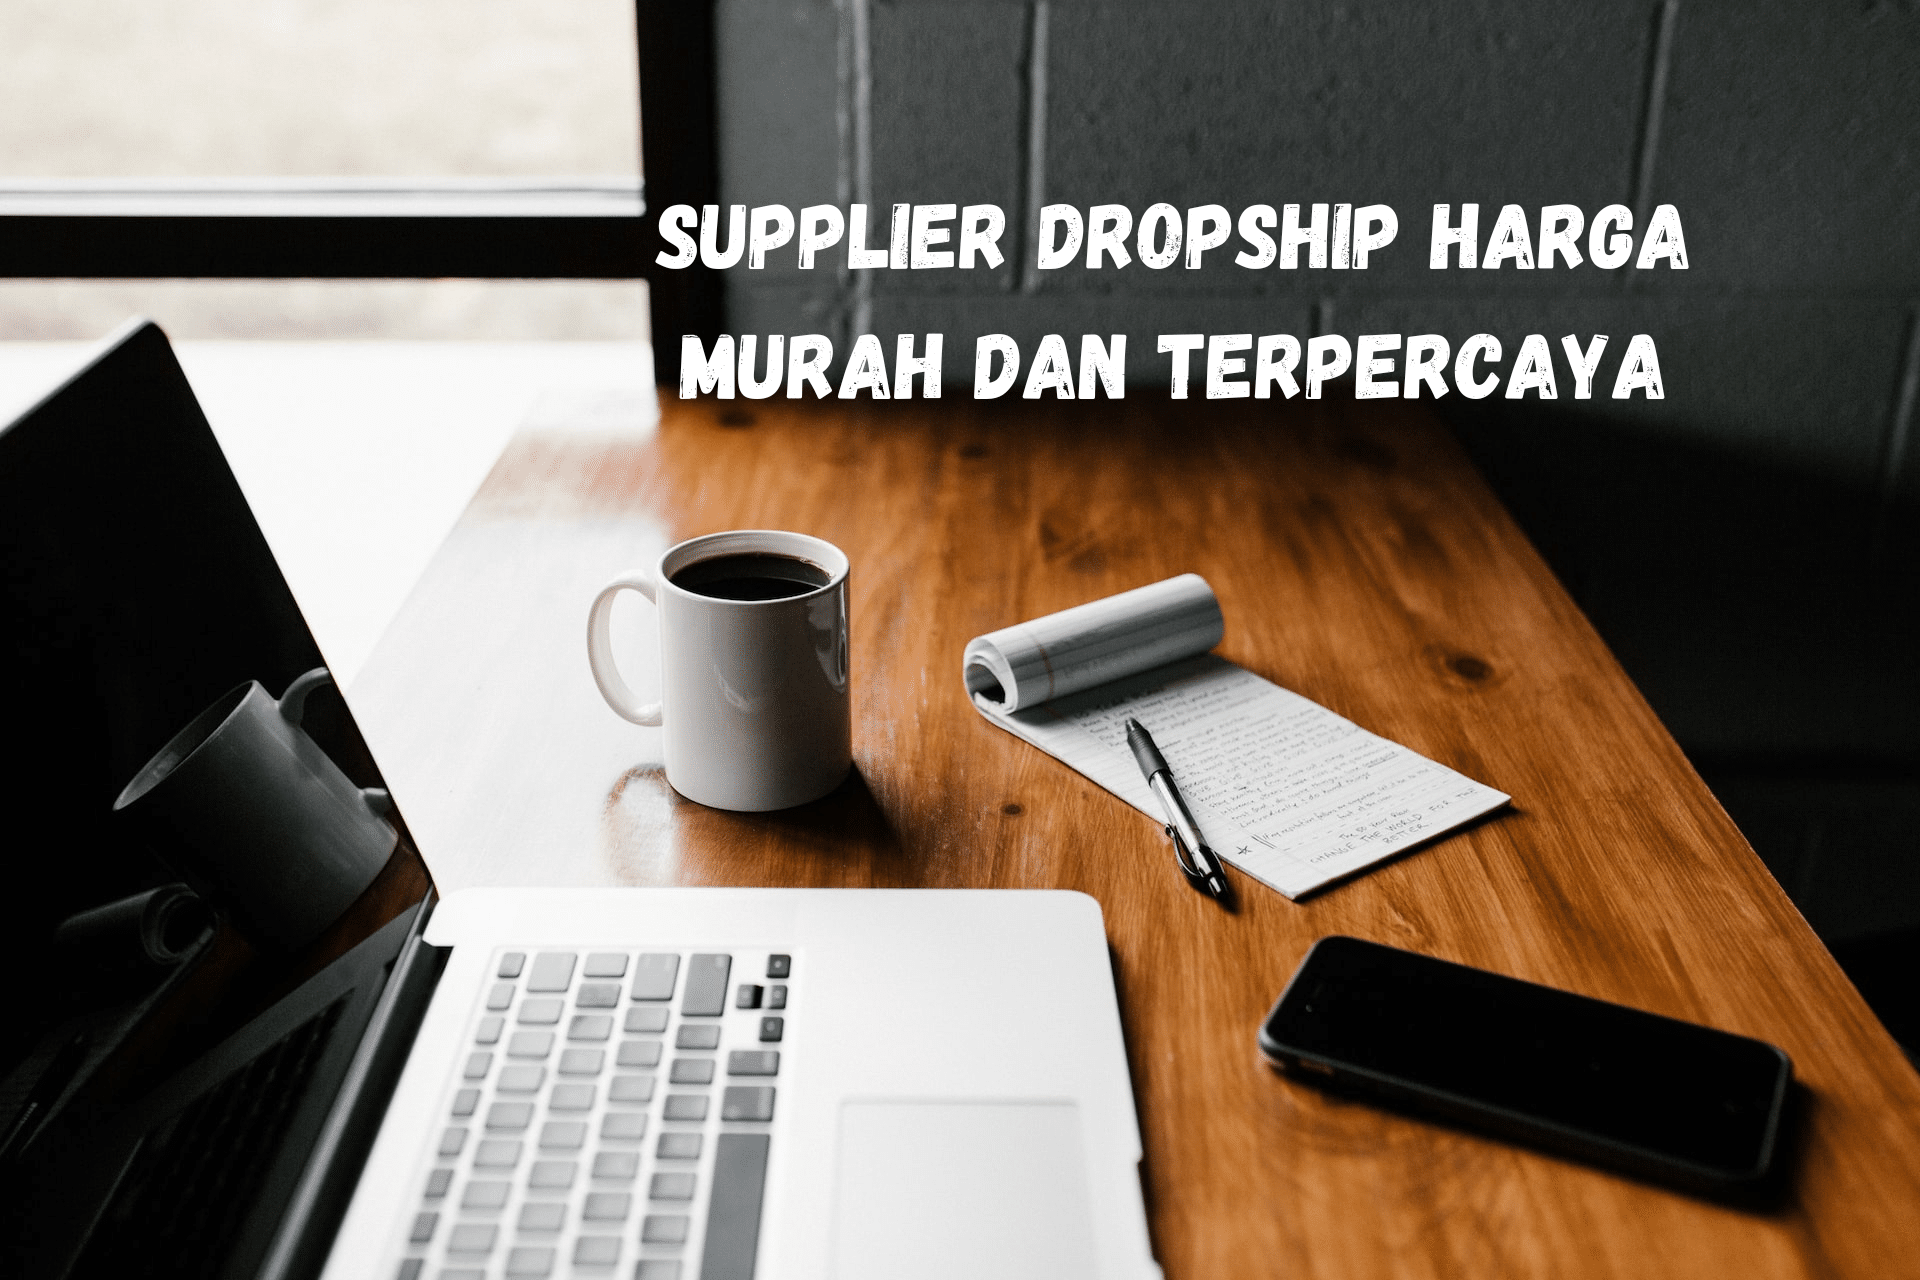 Supplier Dropship Harga Murah dan Terpercaya